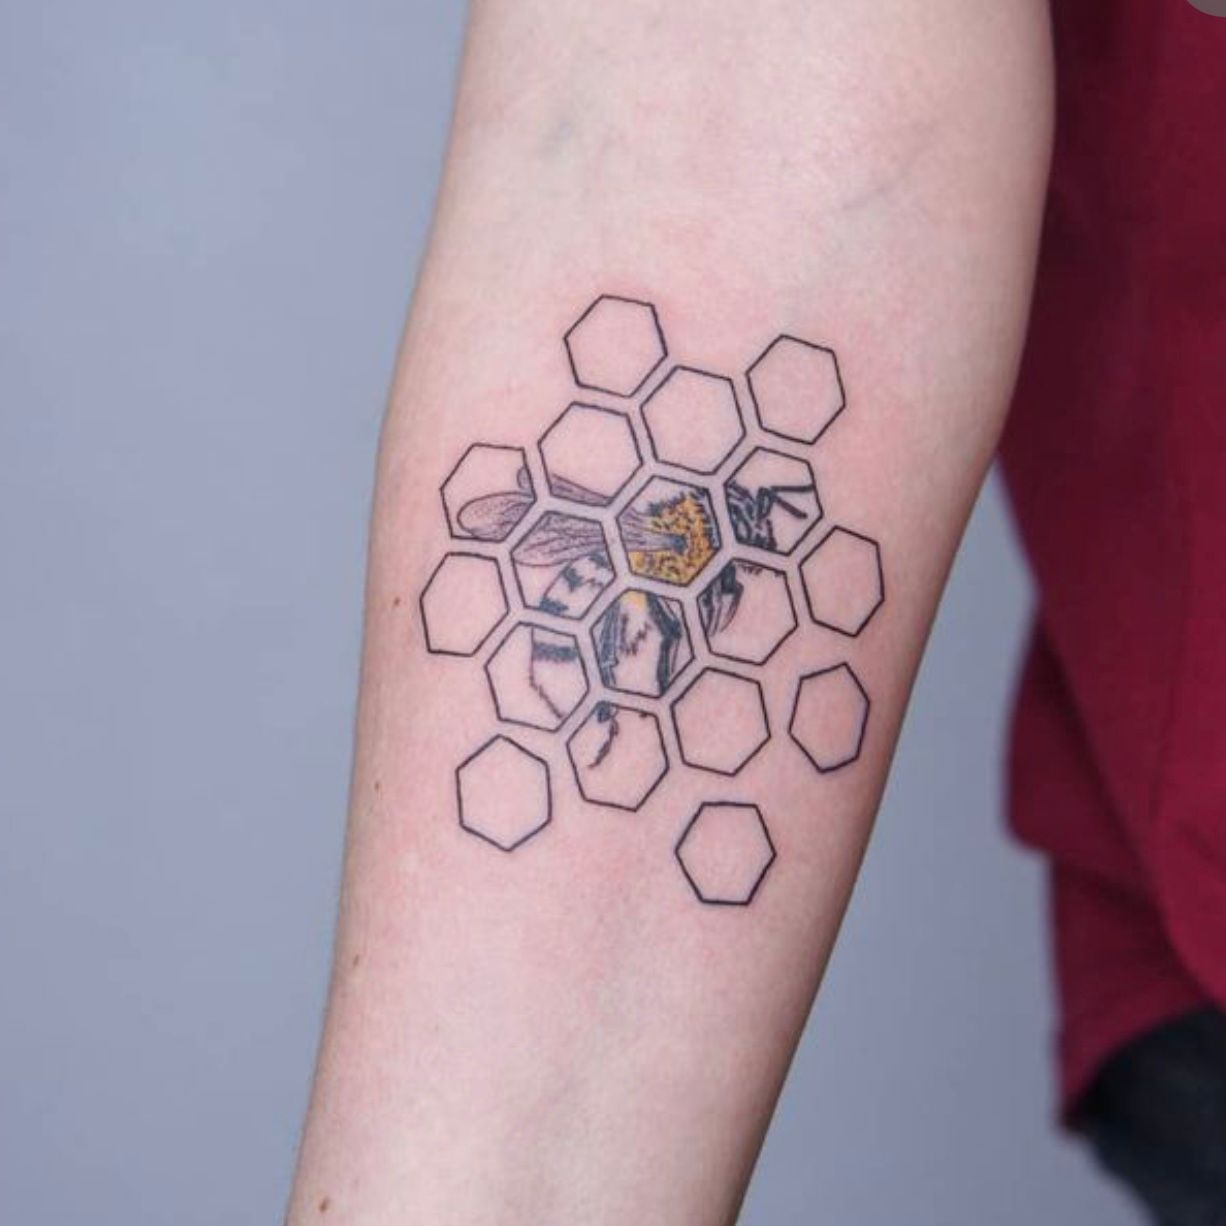 Honeycomb Tattoo Designs For Men Hexagon Ink Ideas Modern Body Art 13068 |  Hot Sex Picture